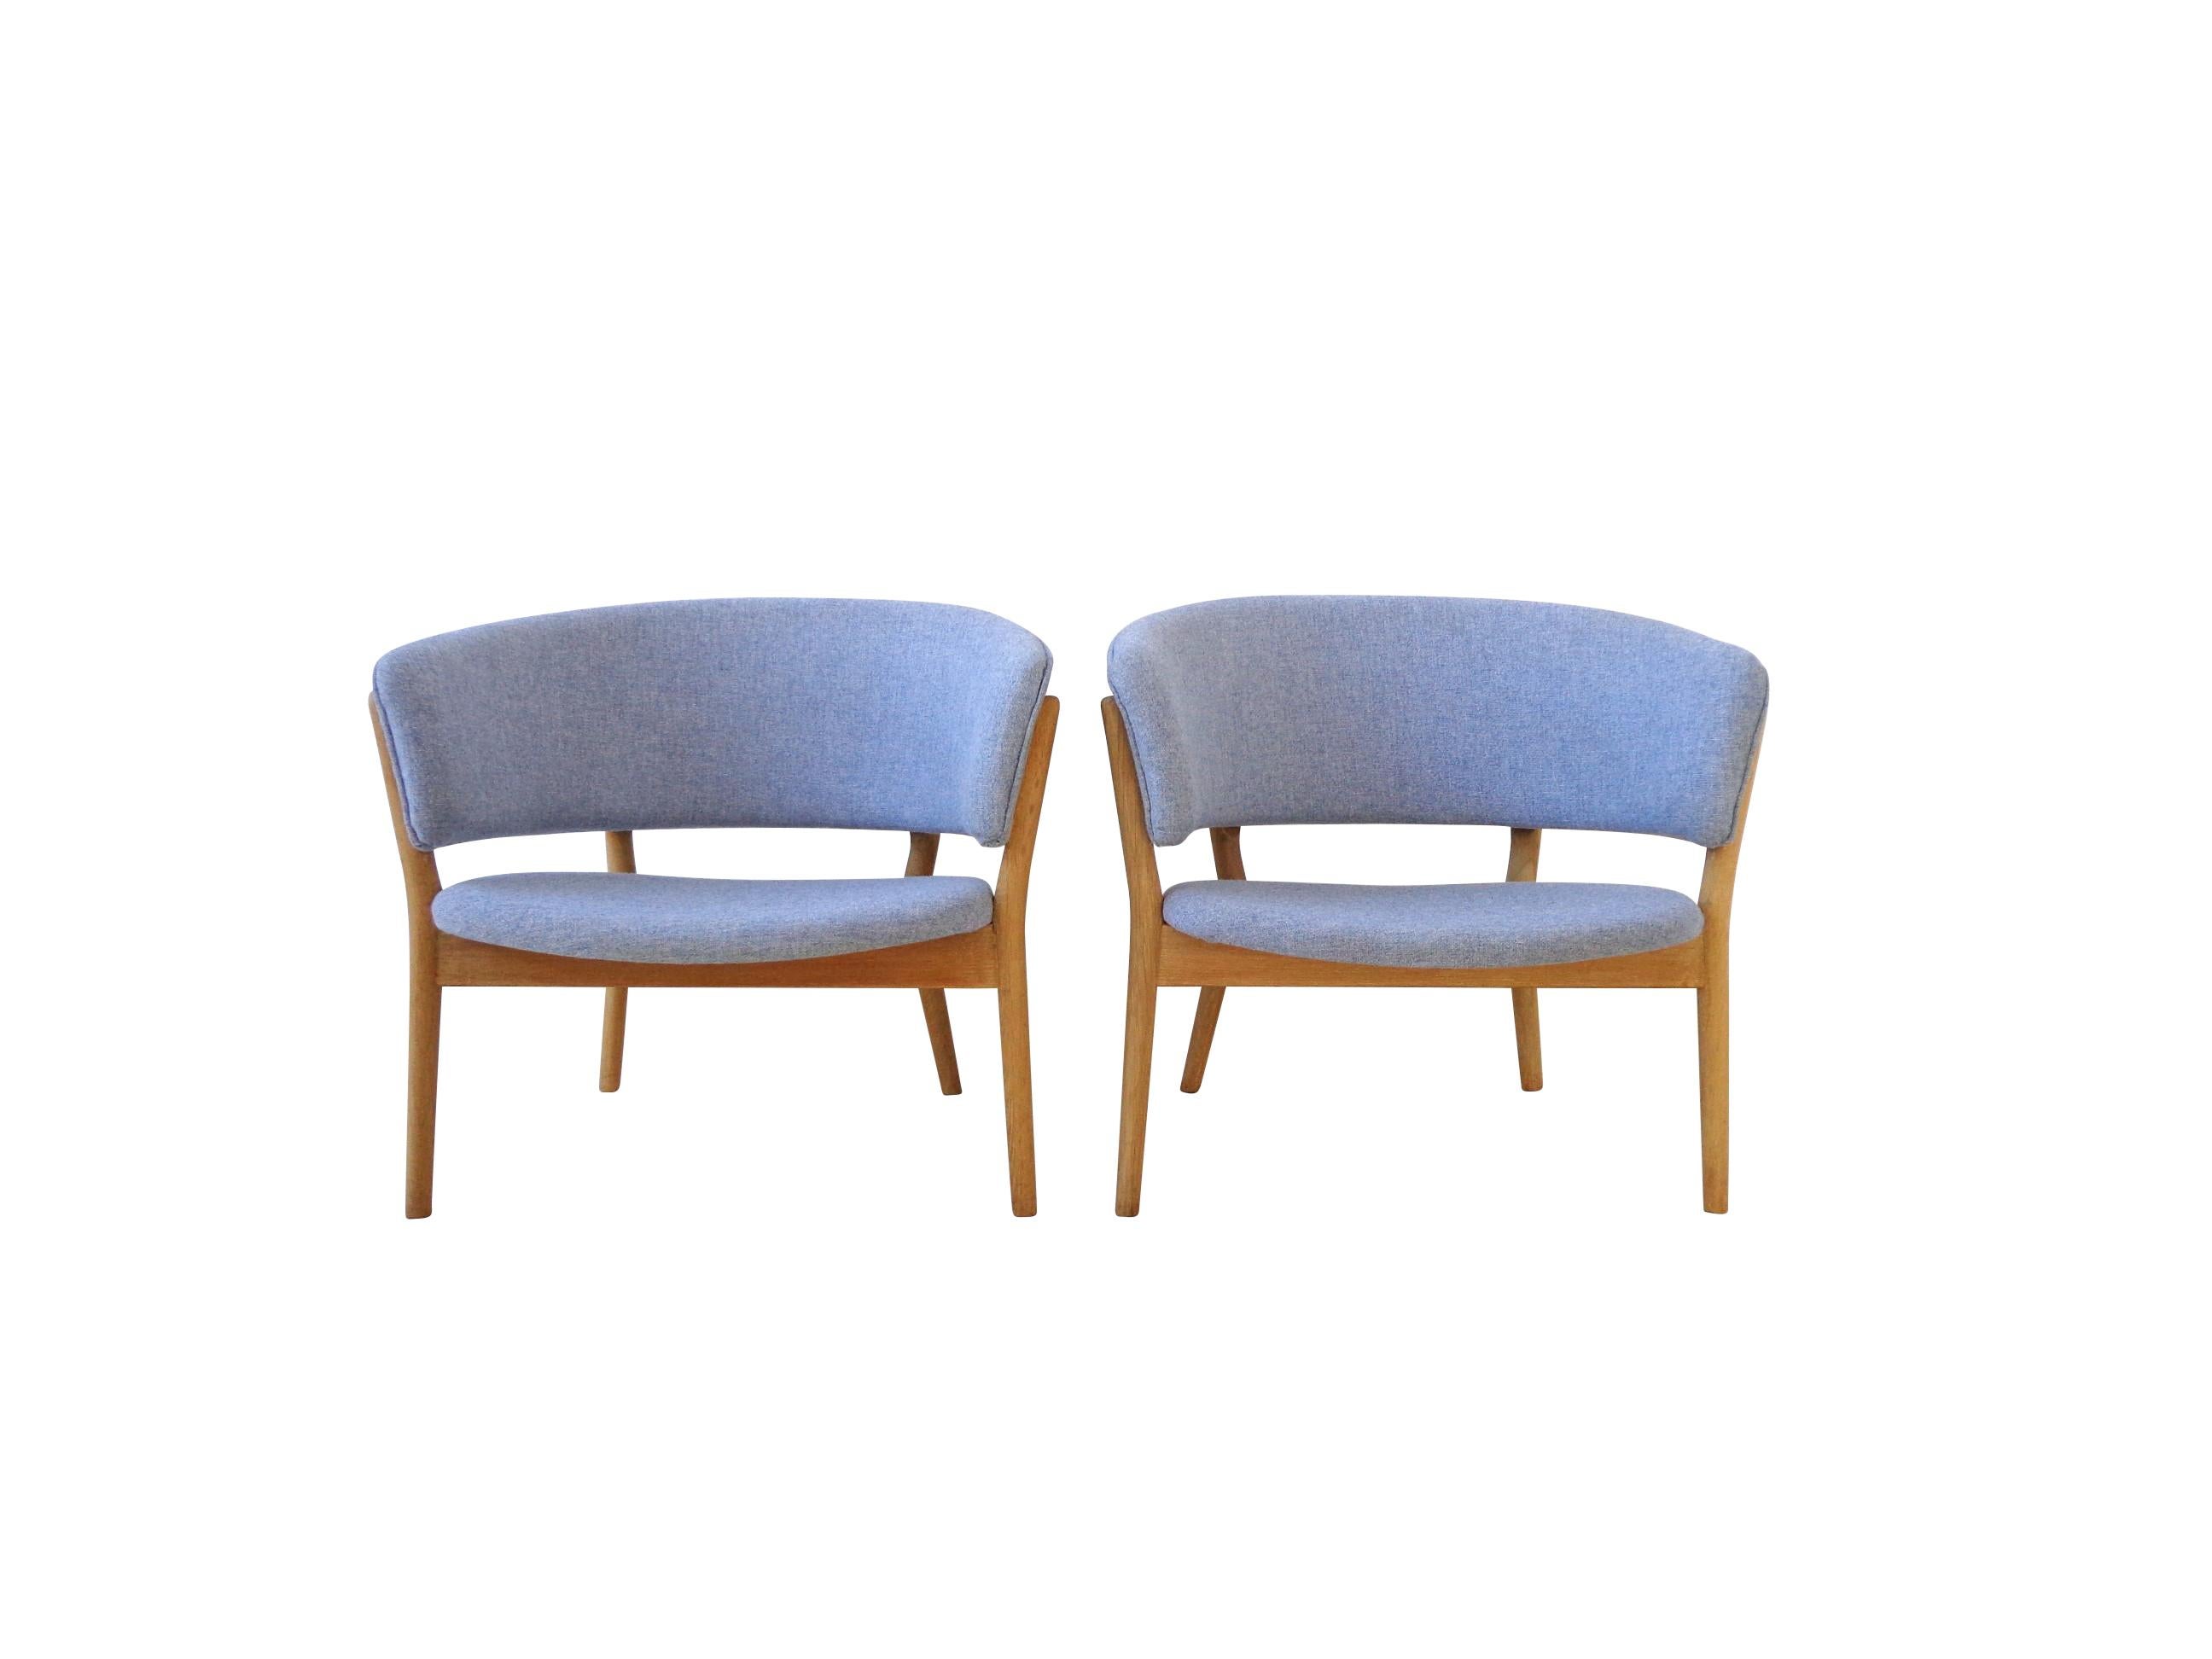 Ein ikonisches Paar bequemer Loungesessel, entworfen von der dänischen Designerin Nanna Ditzel in Collaboration mit Søren Willadsen. Dieses spektakuläre Paar des Modells ND-83 besteht aus einem Gestell aus massivem Eichenholz und einem Wollstoff mit